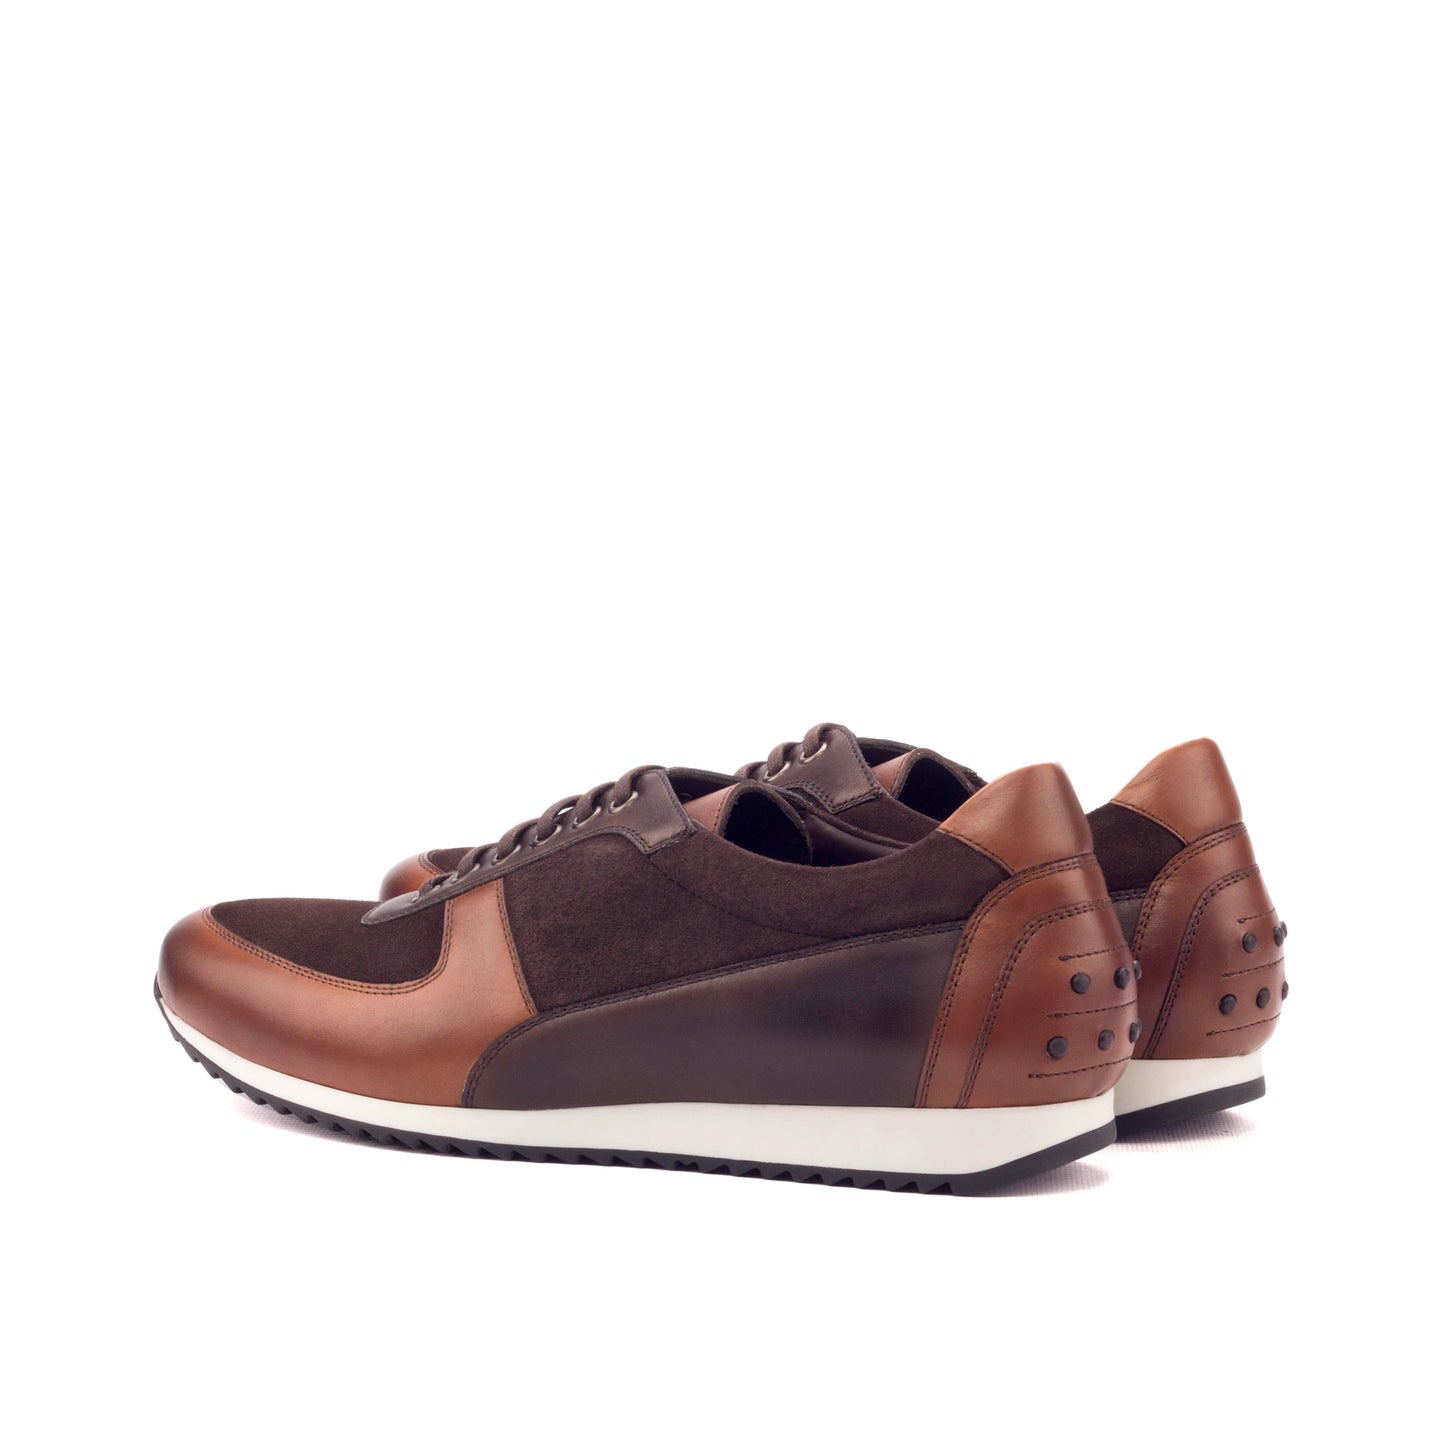 SUITCAFE Brown Leather & Suede Corsini Italian Men's Sneaker